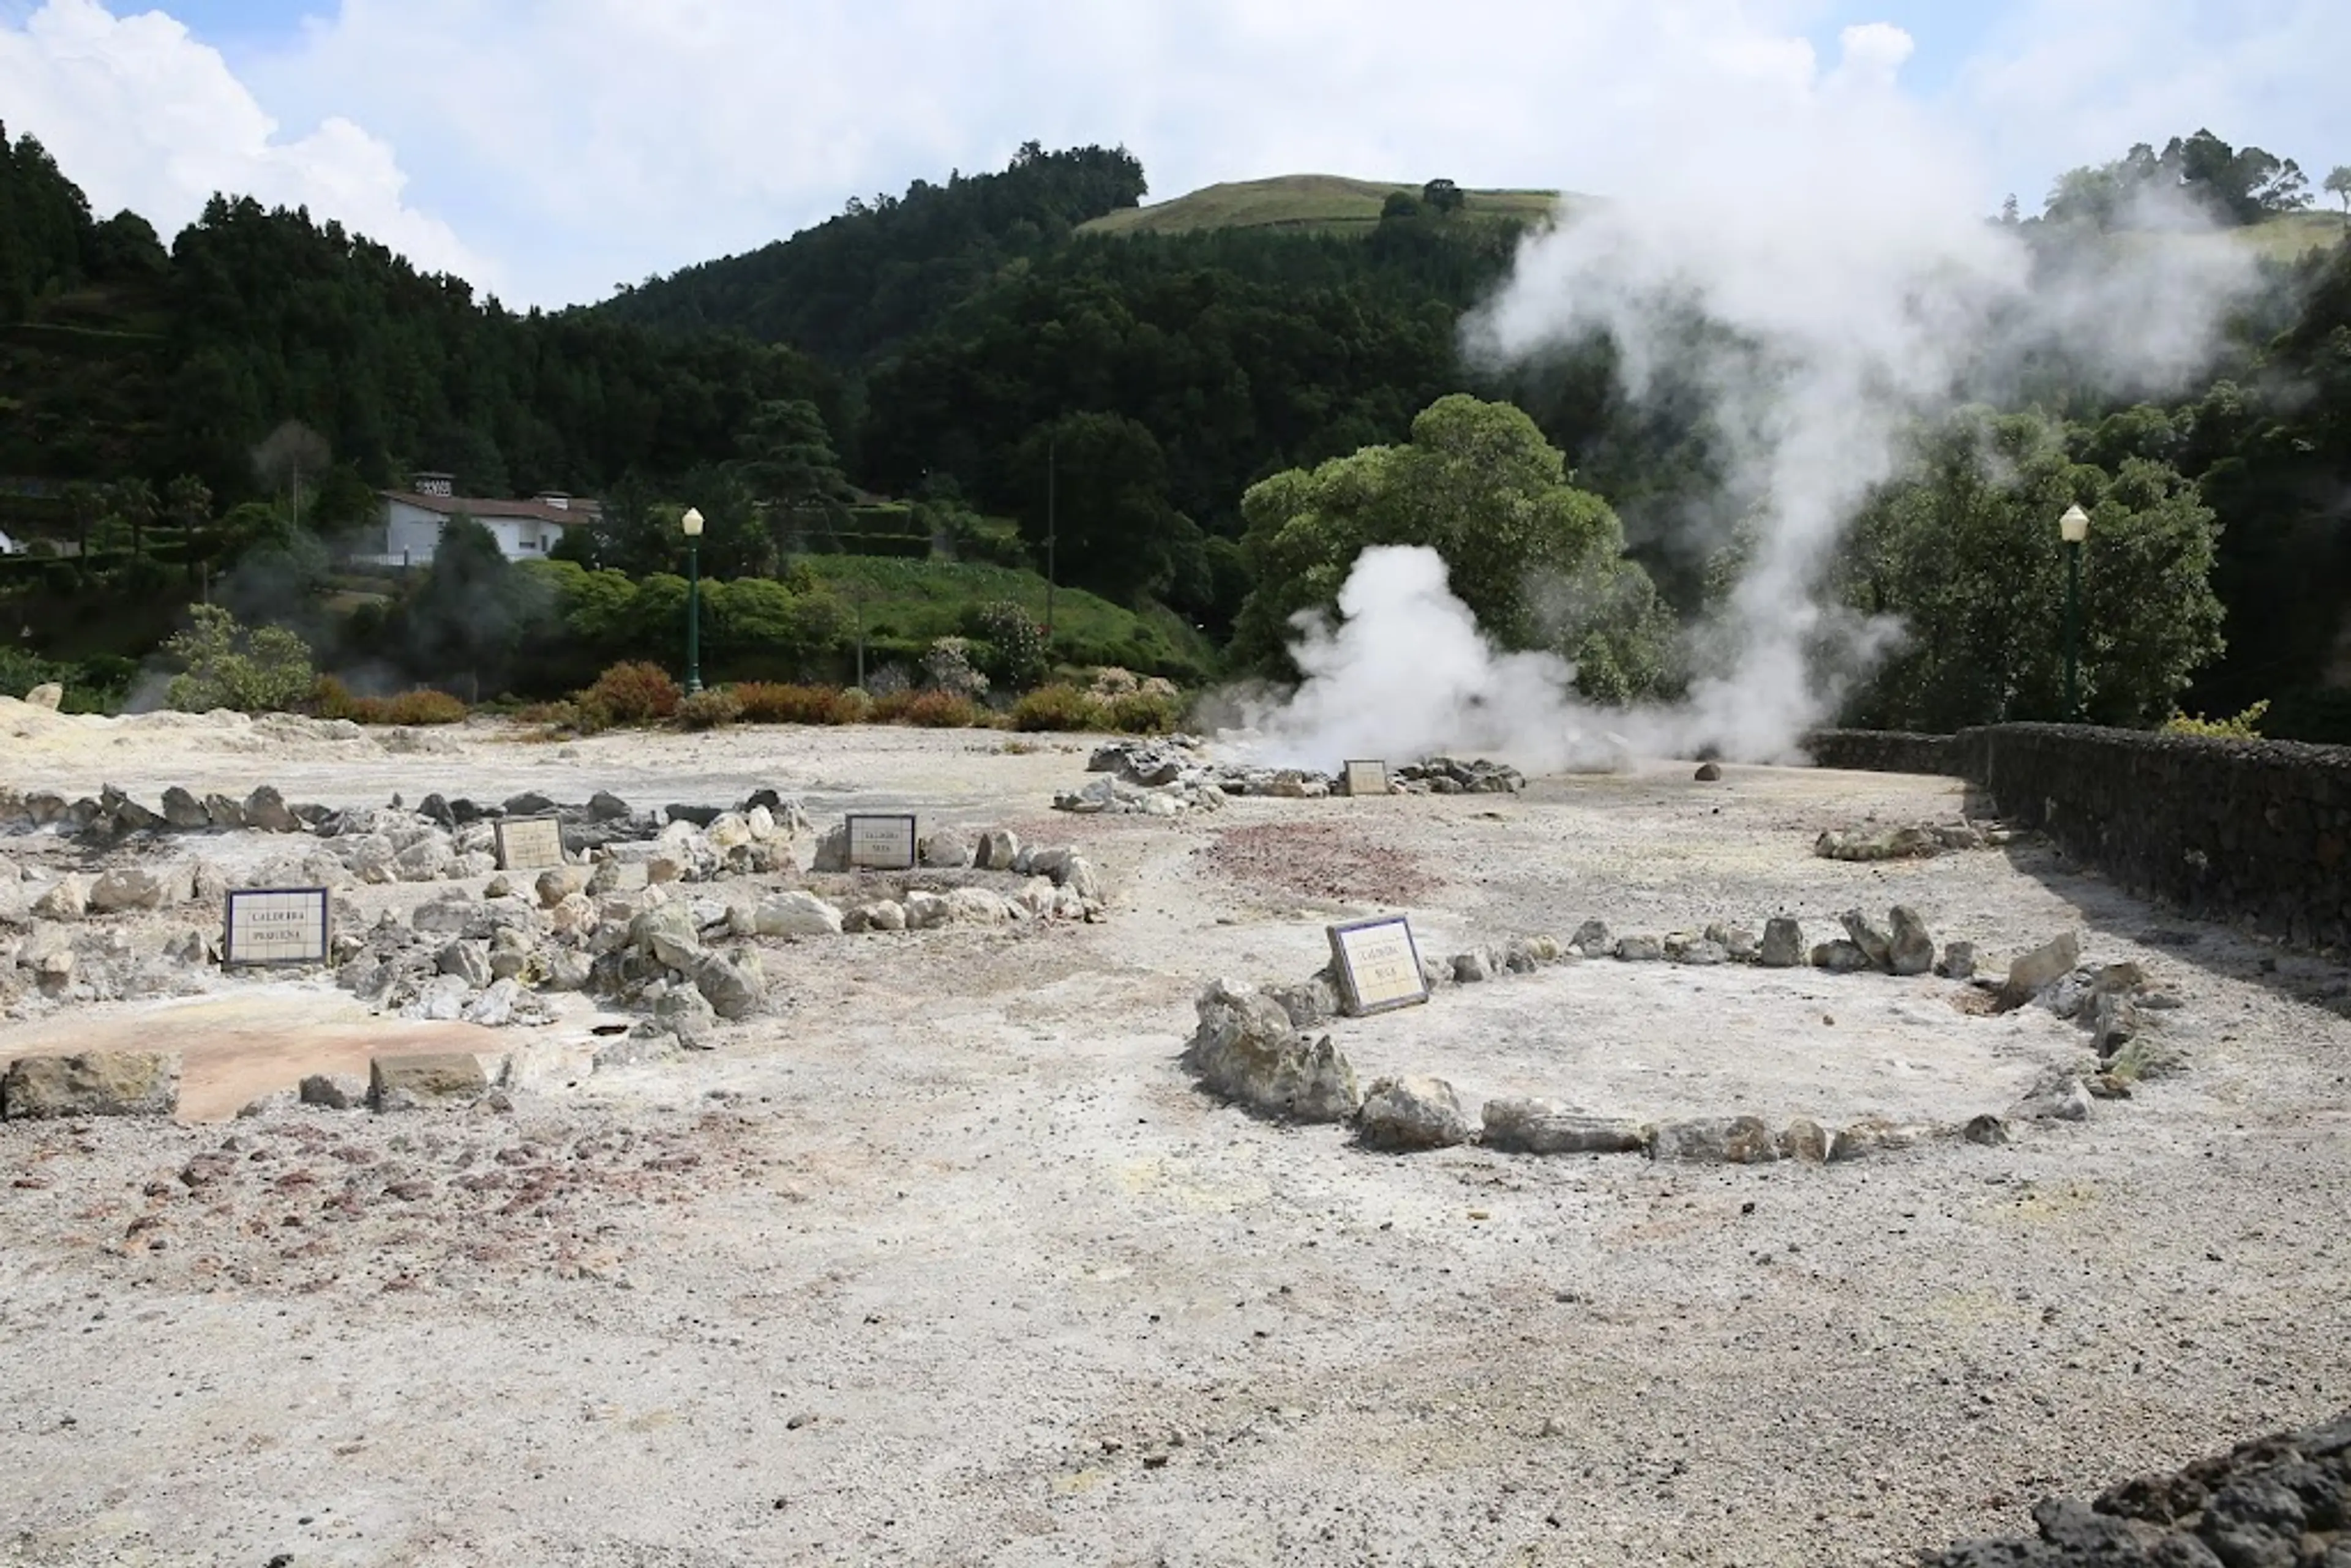 Geothermal area of Furnas